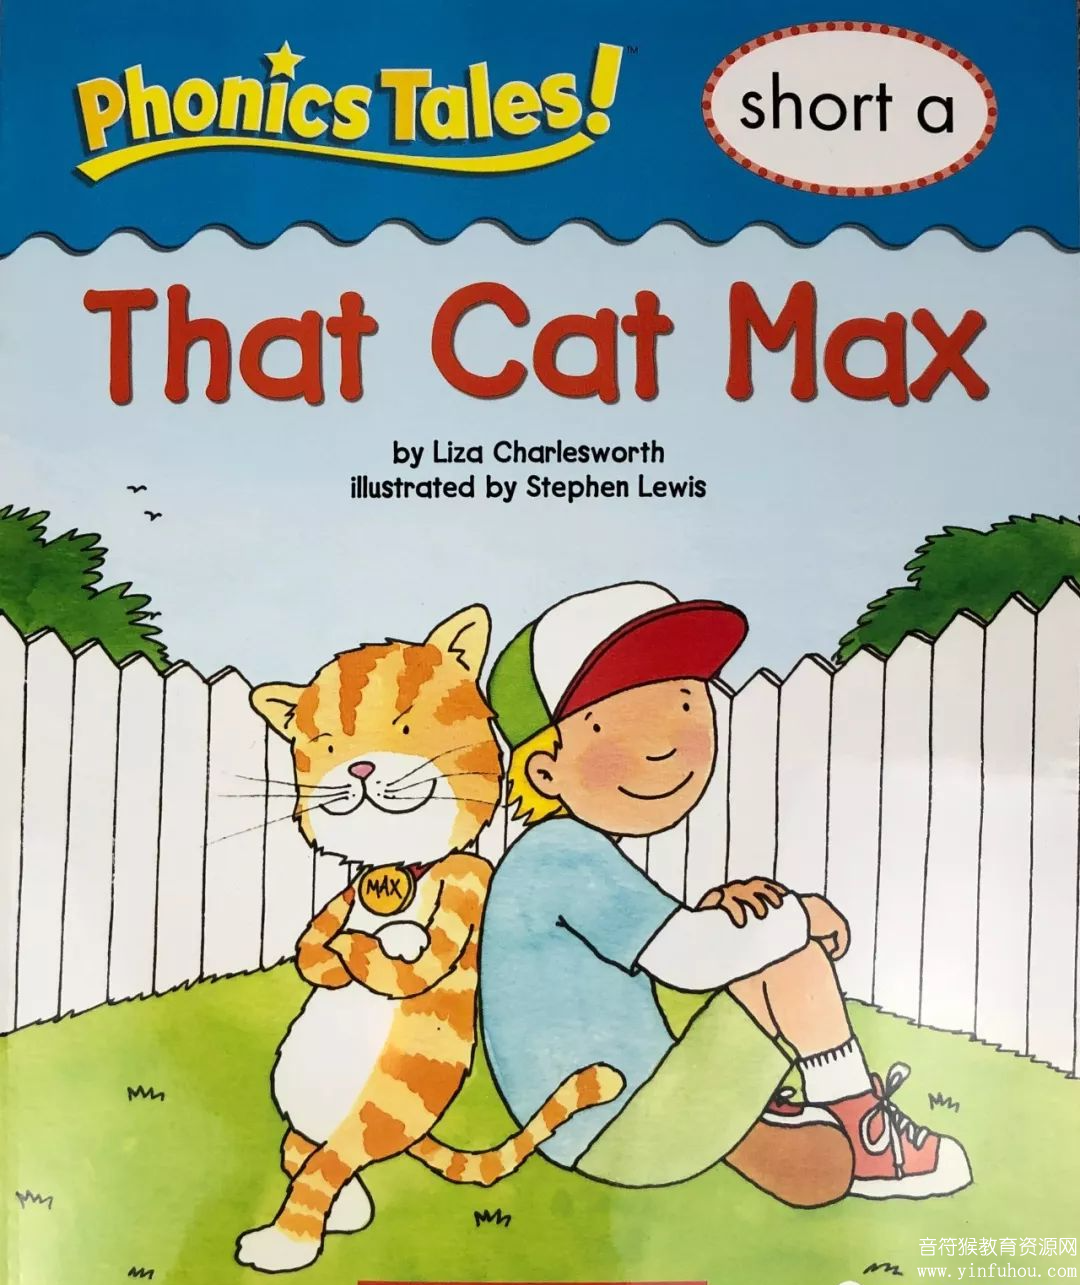 The Cat Max